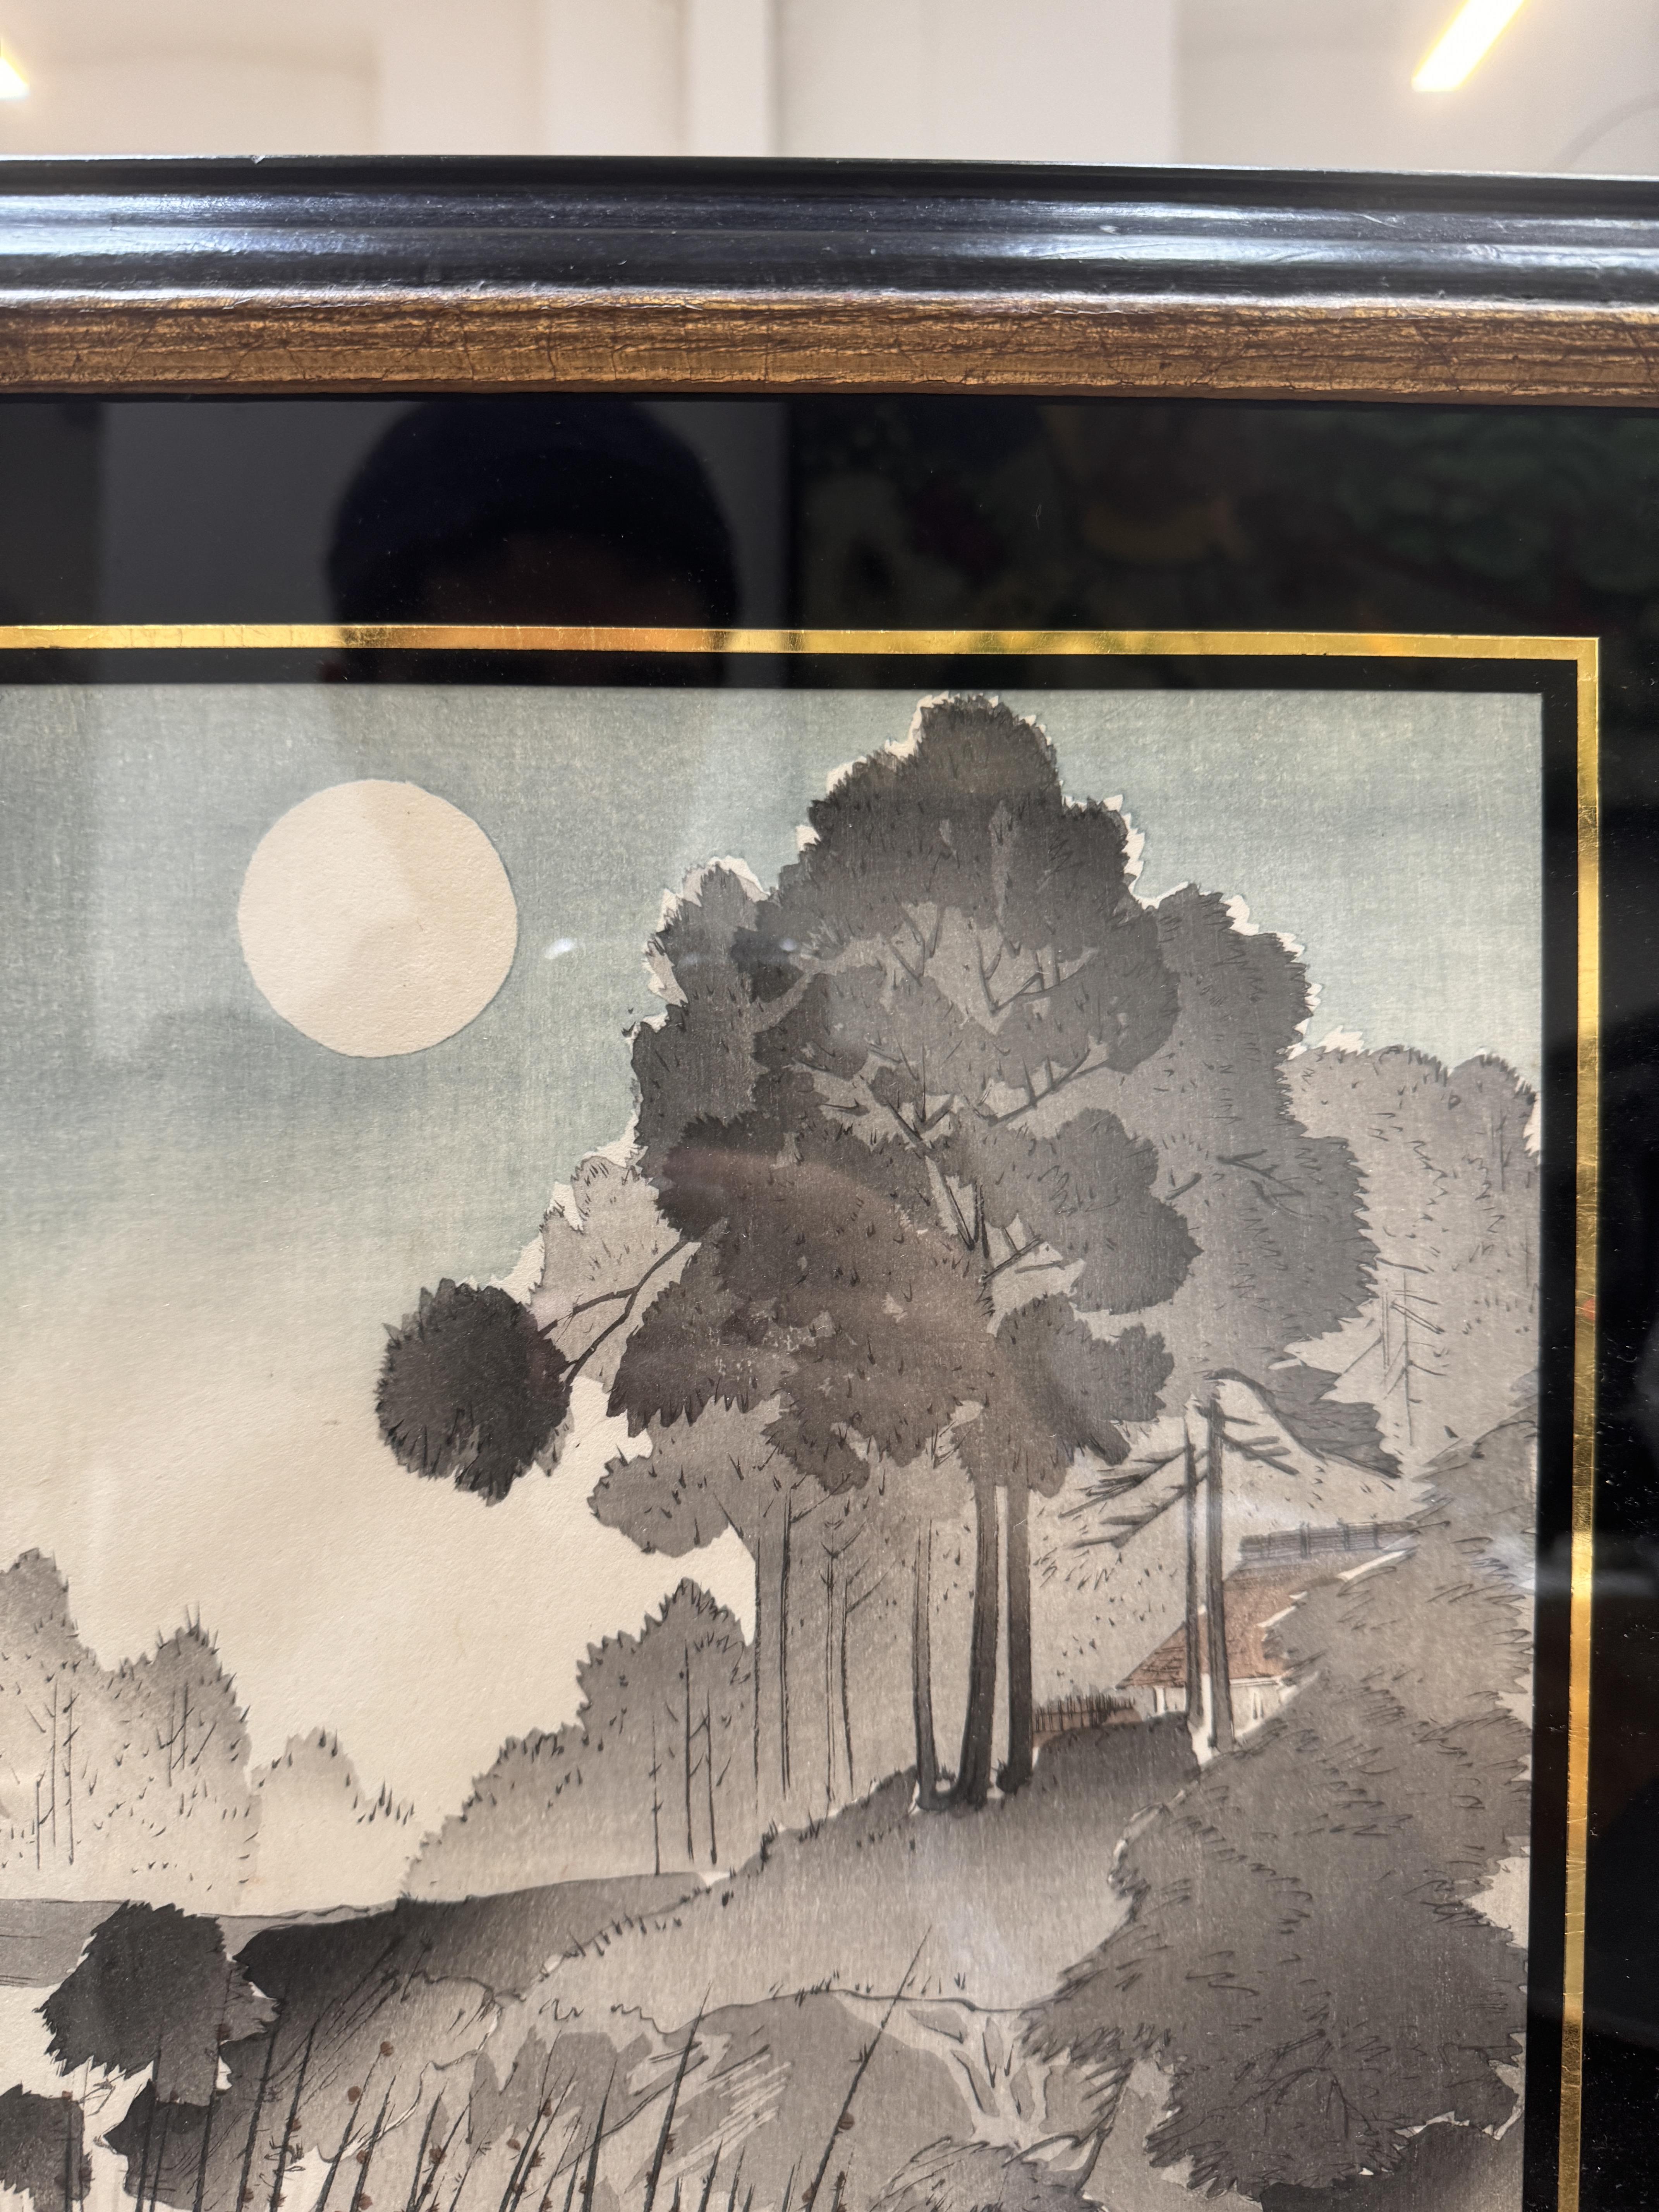 TSUKIOKA YOSHITOSHI (1797 – 1858), MIYAGAWA SHUNTEI (1873 – 1914) Two Japanese woodblock print tript - Image 9 of 23